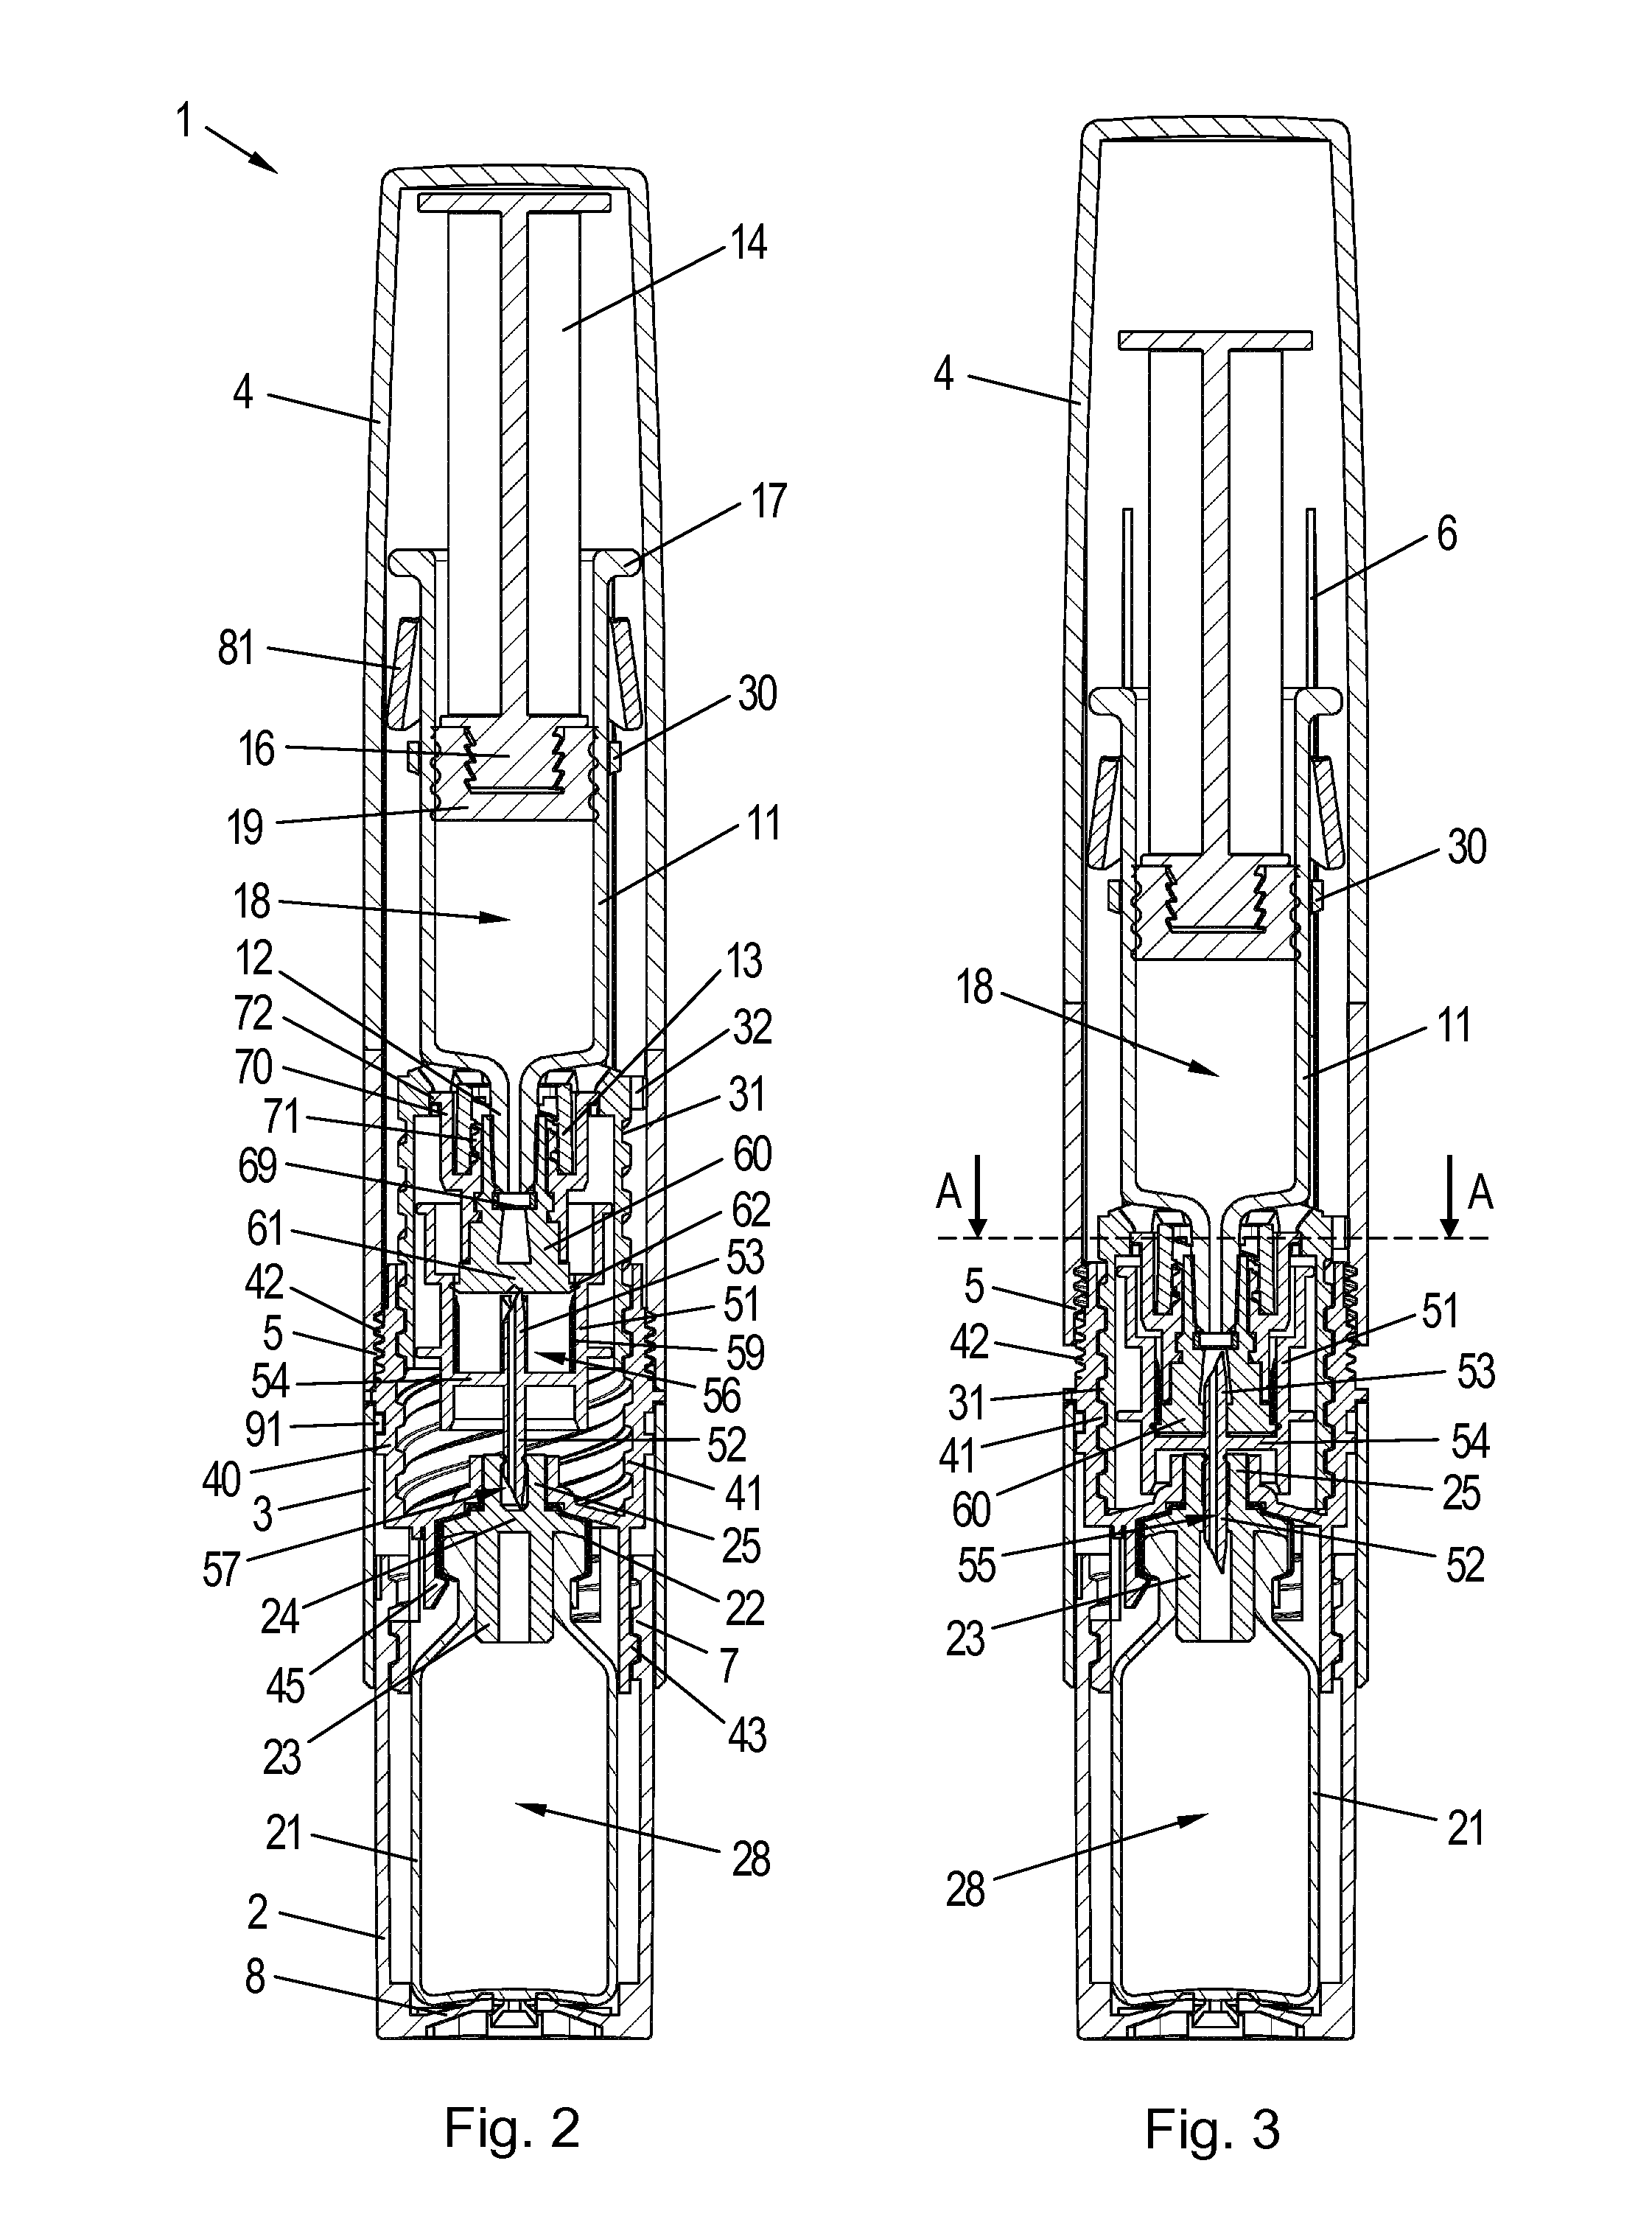 Pre-assembled fluid transfer arrangement